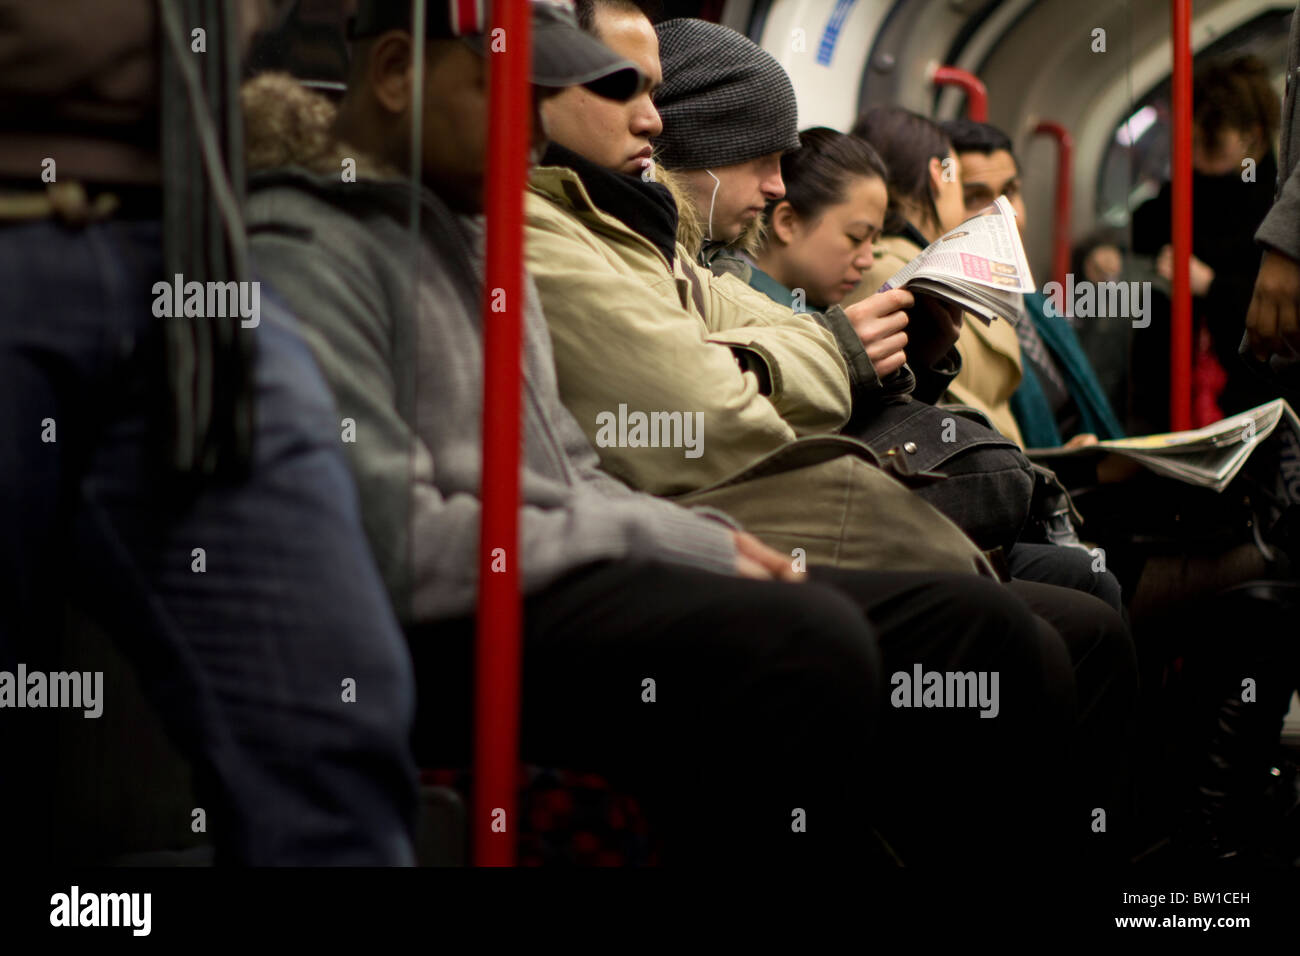 London Underground tube voyageurs passagers banlieusards, avec l'homme lisant le journal Métro Banque D'Images